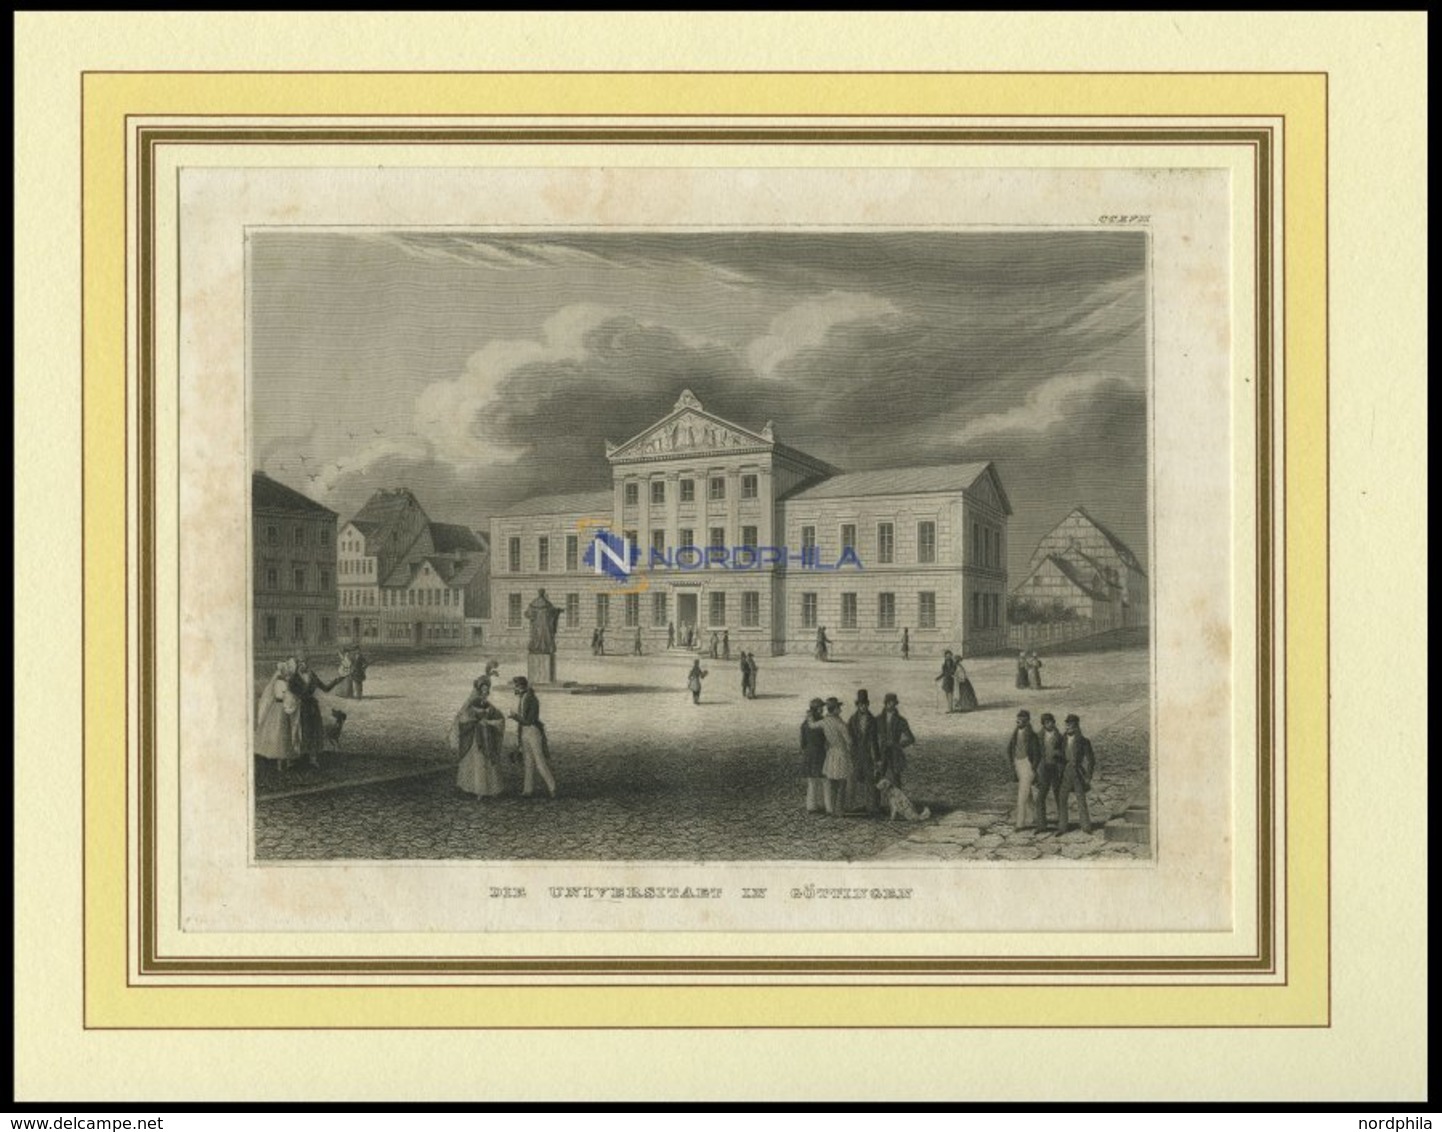 GÖTTINGEN: Die Universität Mit Reizvoller Personenstaffage Im Vordergrund, Stahlstich Von B.I. Um 1840 - Lithographien